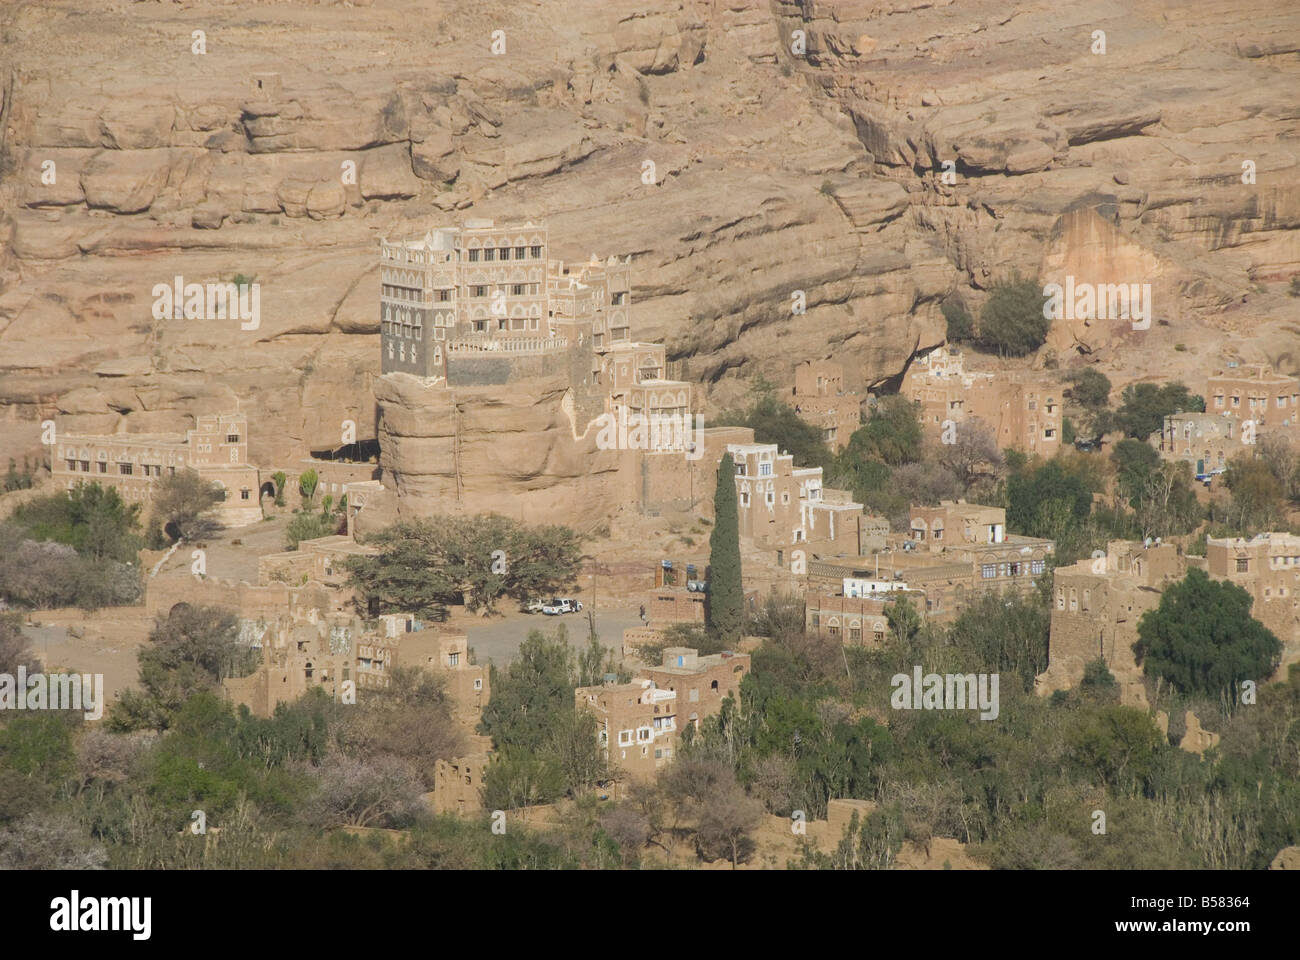 Dhar Alhajr (le Palais de l'Iman), construit sur une falaise de grès, Wadi Dhahr, près de Sanaa, Yémen, au Moyen-Orient Banque D'Images